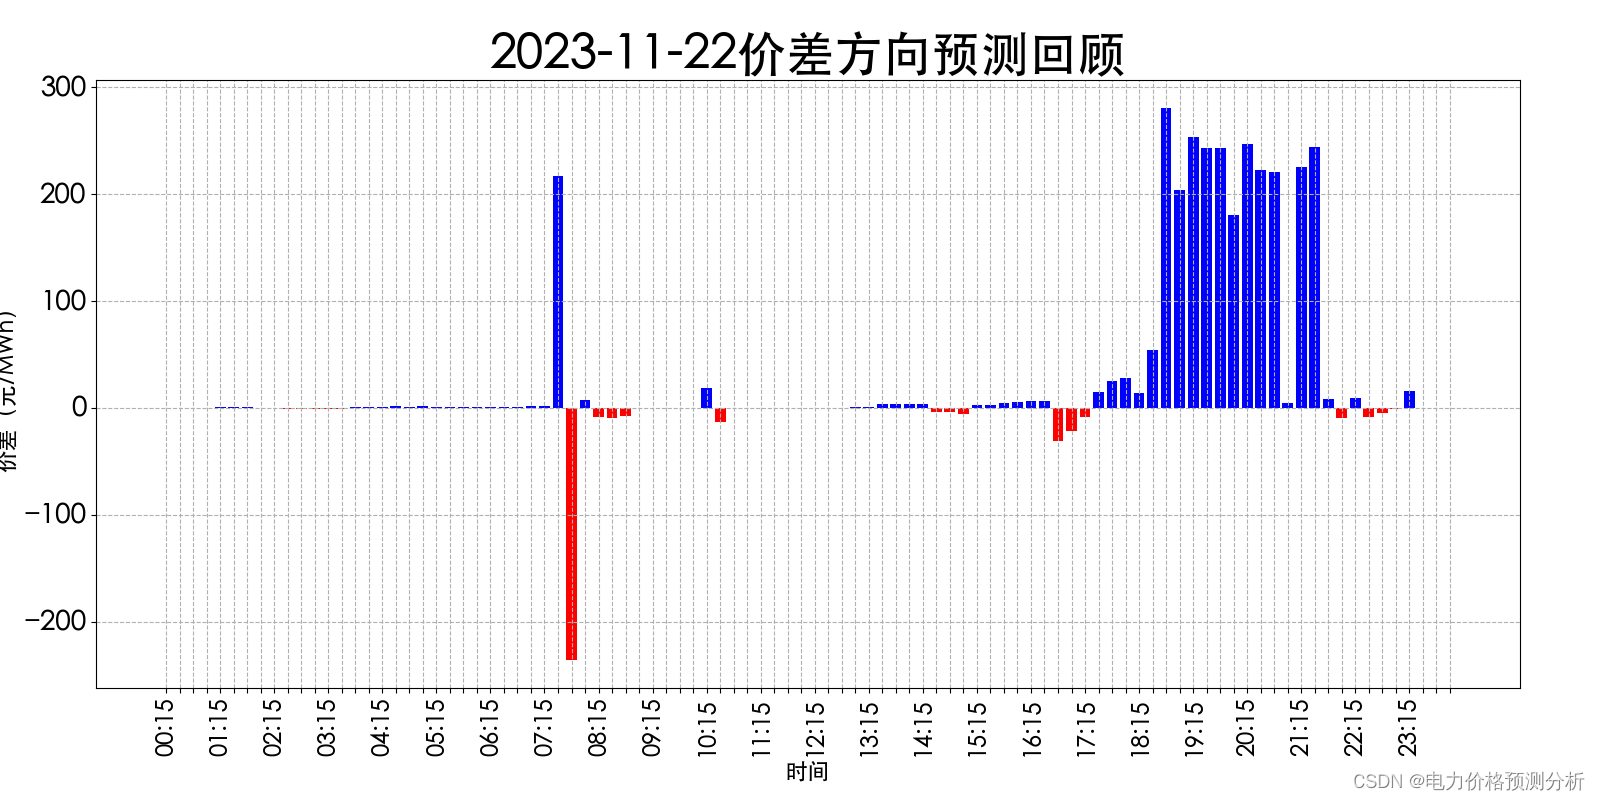 山西电力市场日前价格预测【2023-11-24】